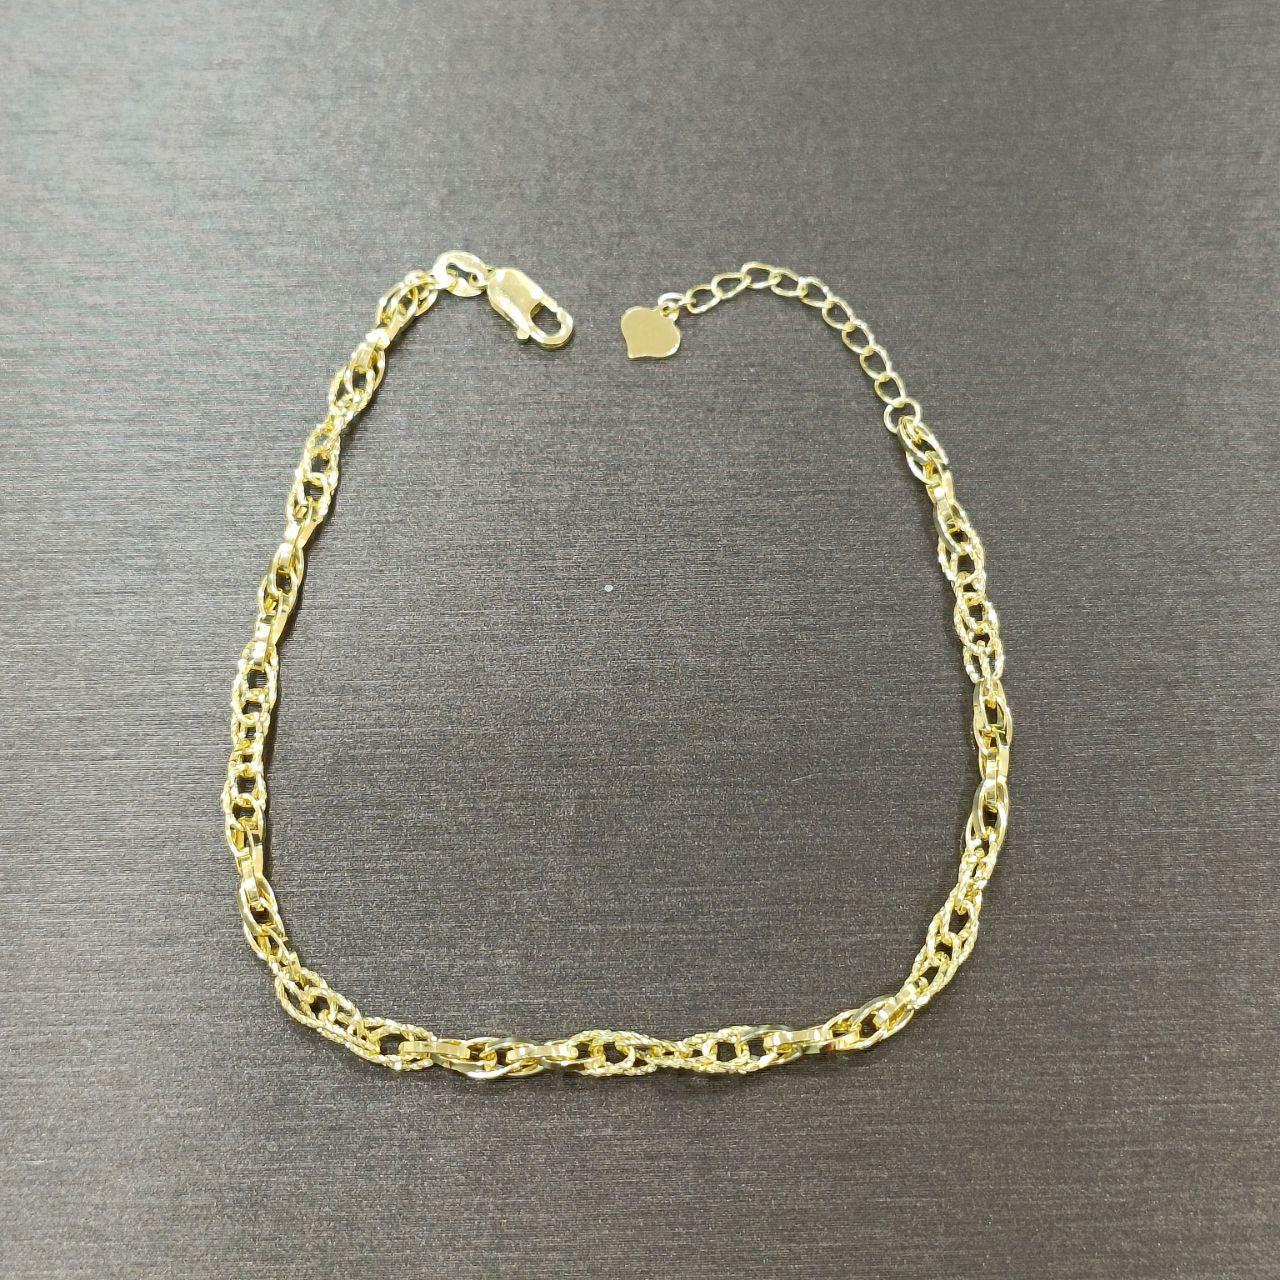 New Design 22k / 916 Gold Elegant Bracelet Light Weight V6-Bracelets-Best Gold Shop